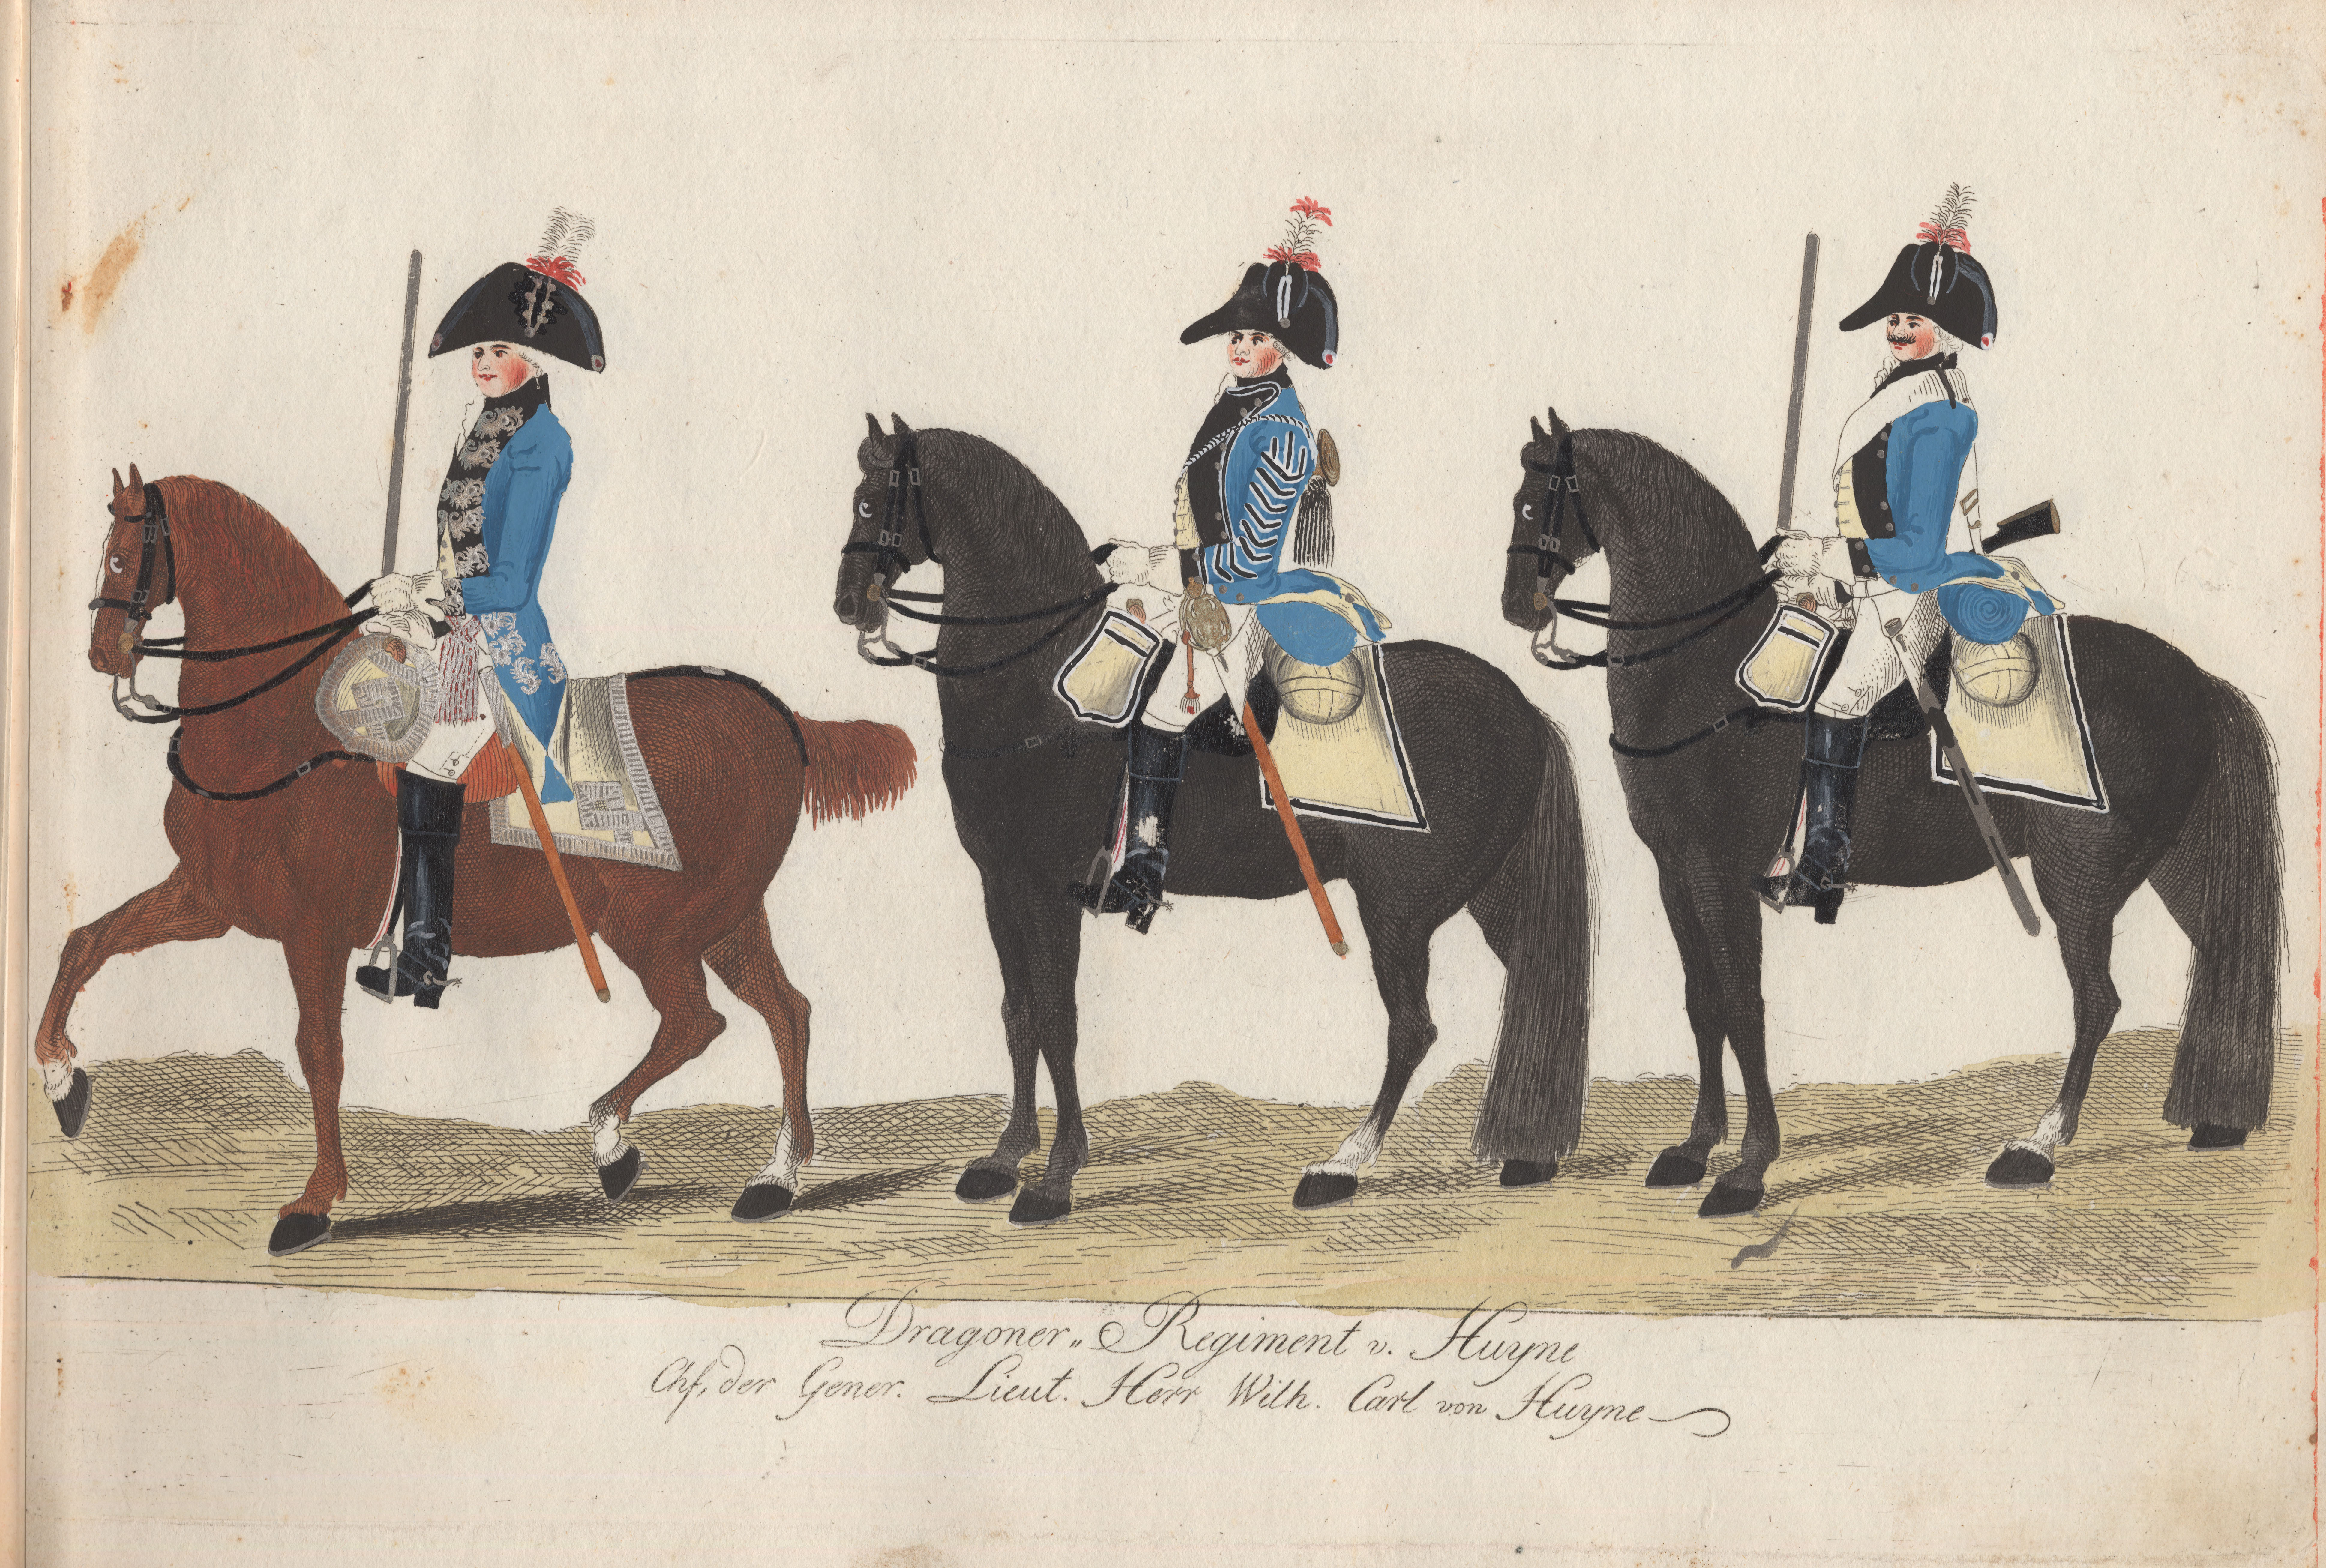 1789  Hochfurstlich Hessisches Corps, gestochen und herausgegeben von J C  Muller - 0_ba627_b49f40c2_orig.jpg